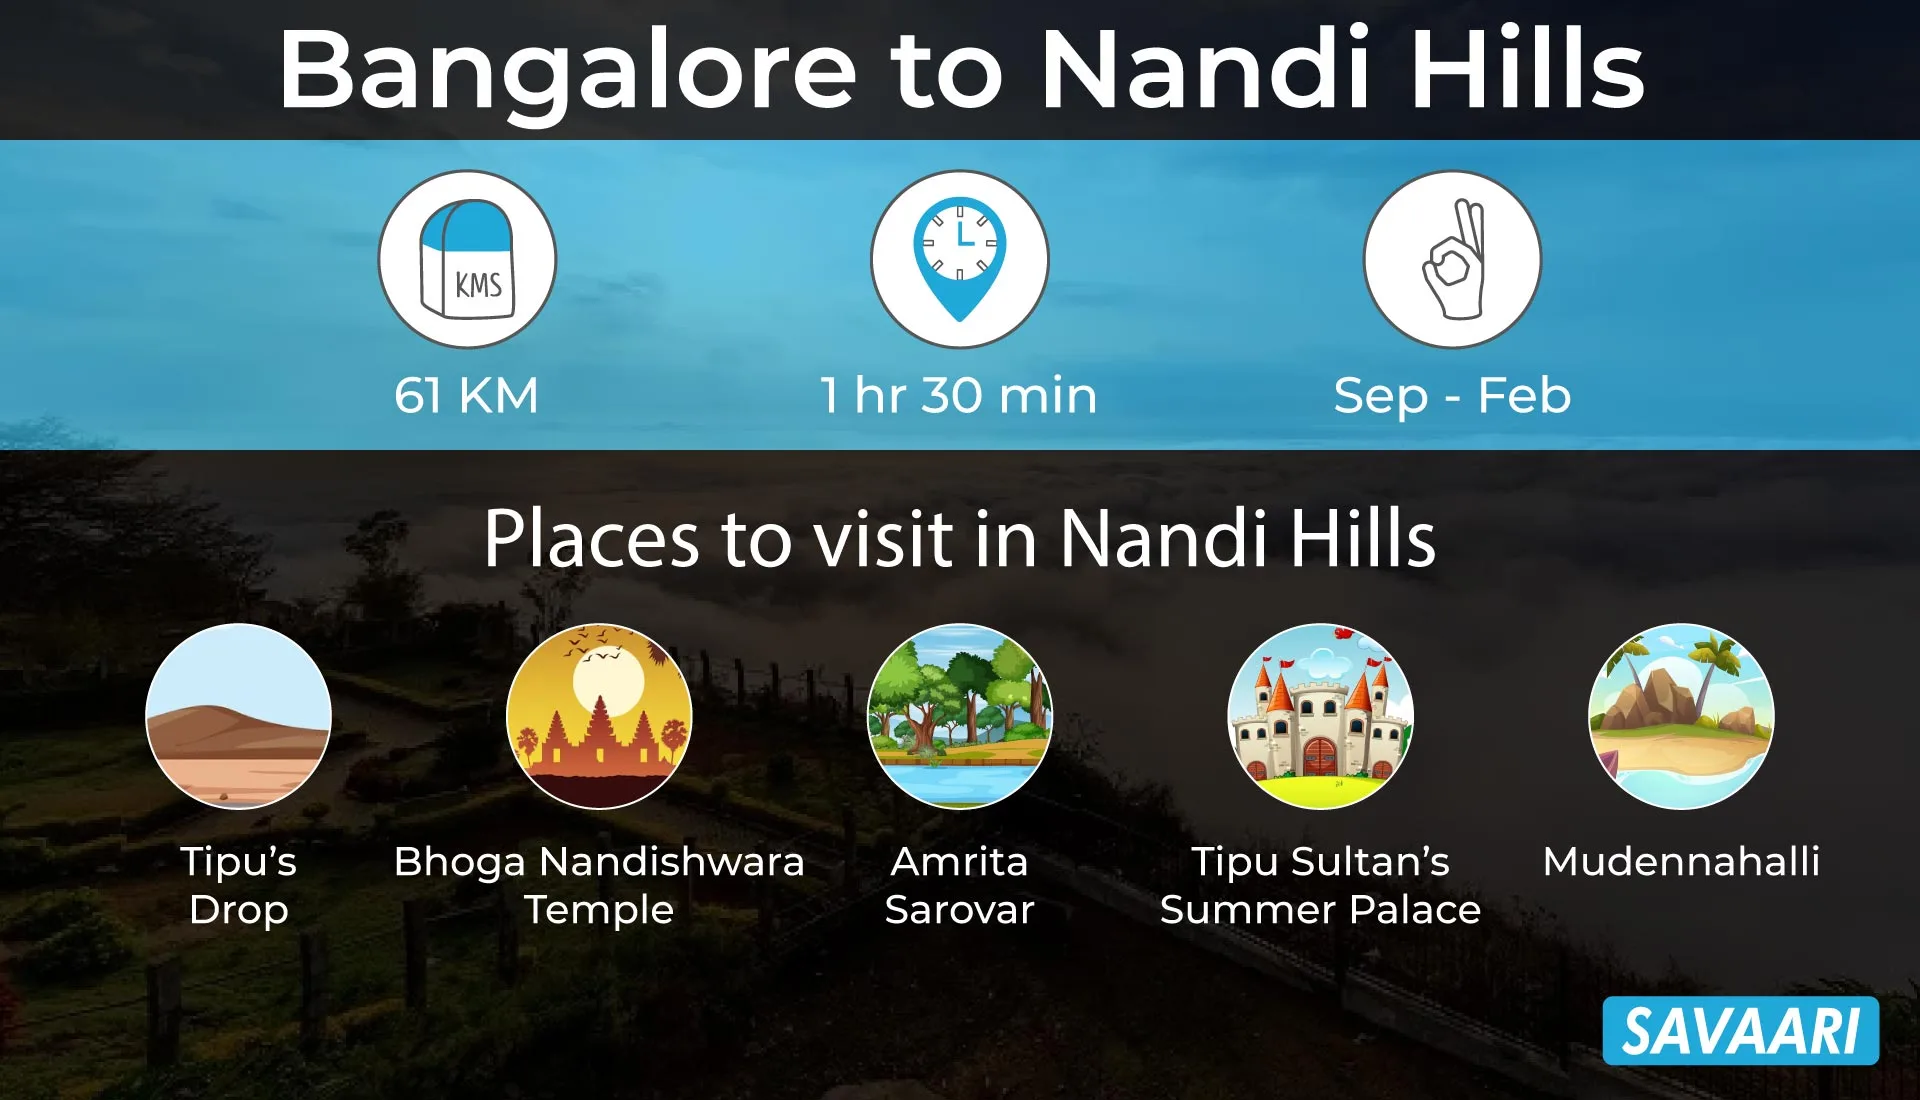 Nandi hills drive from Bangalore